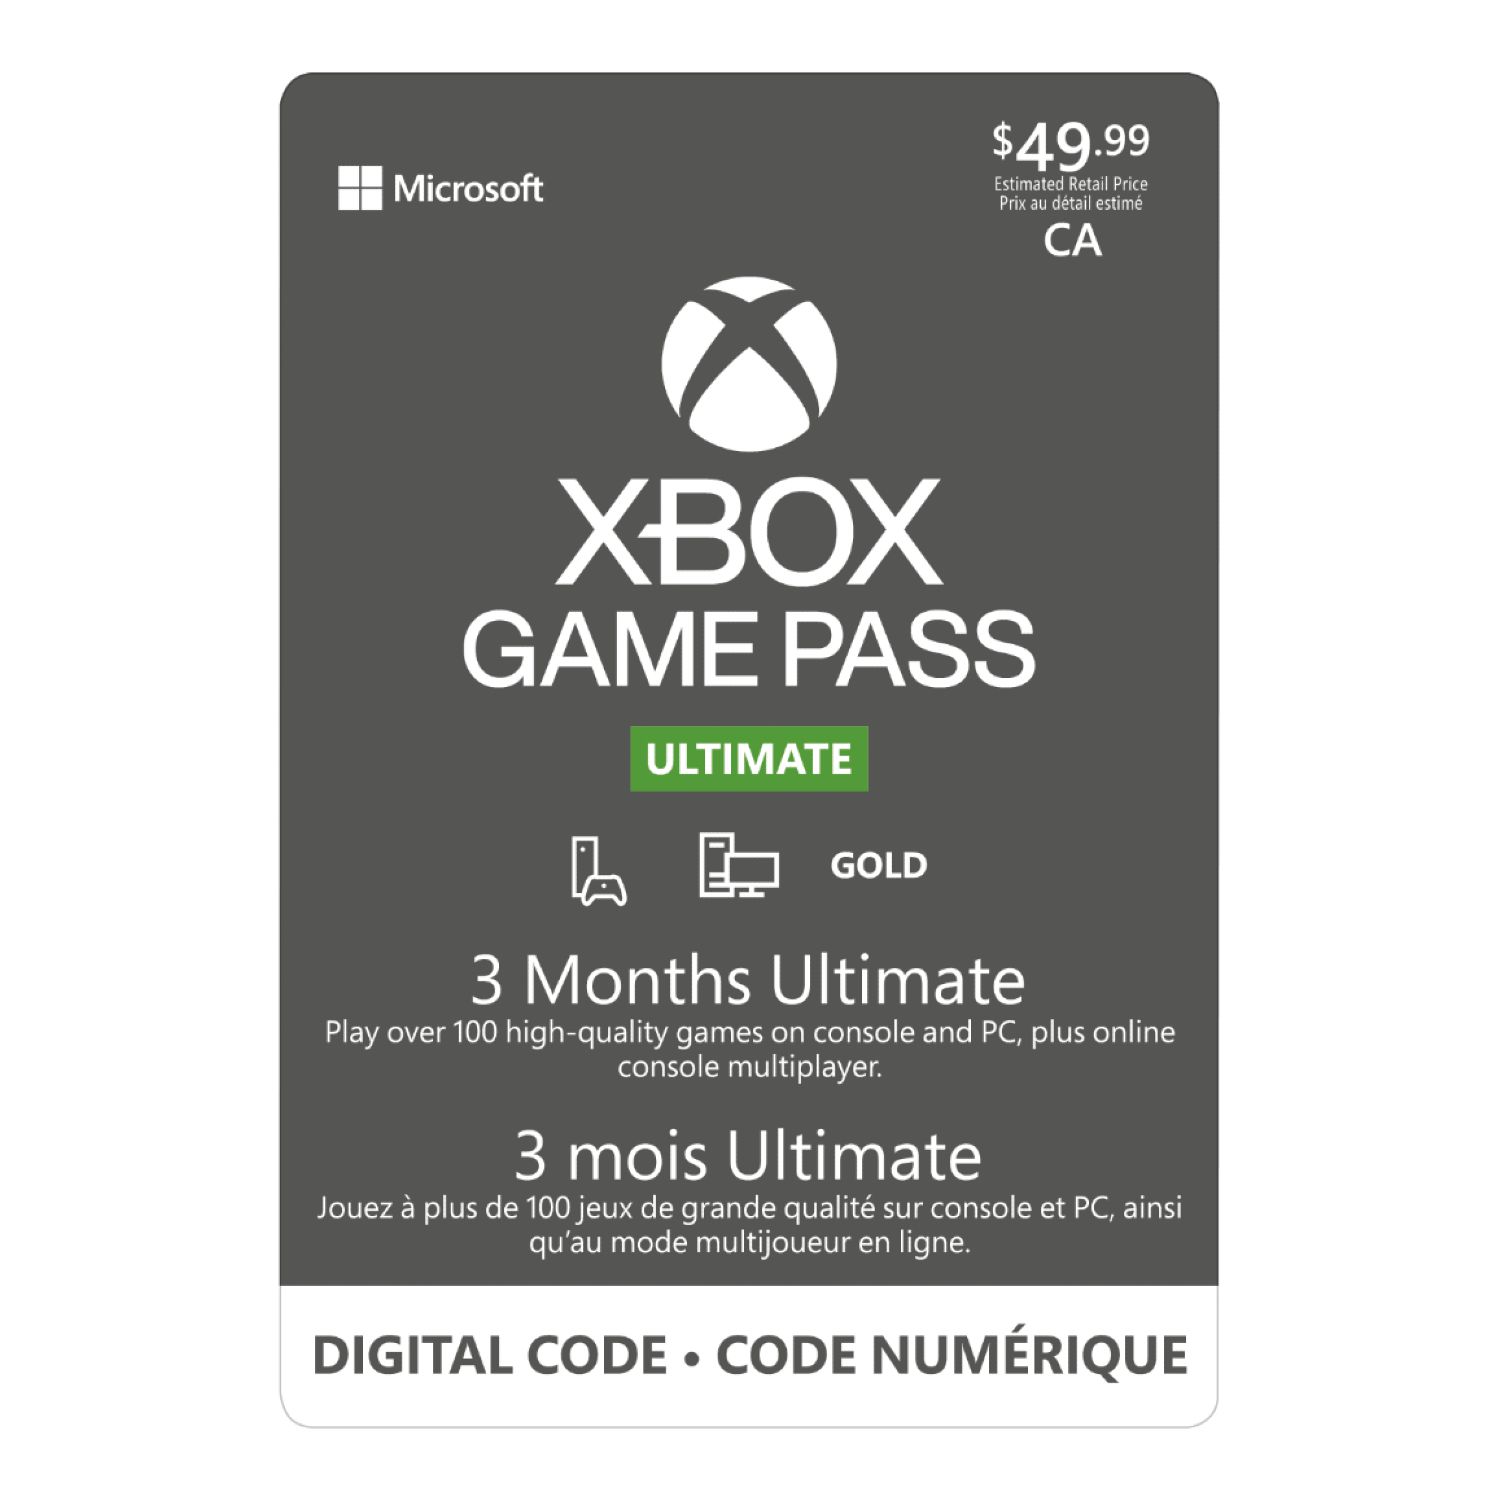 Cartes cadeaux Xbox et Microsoft